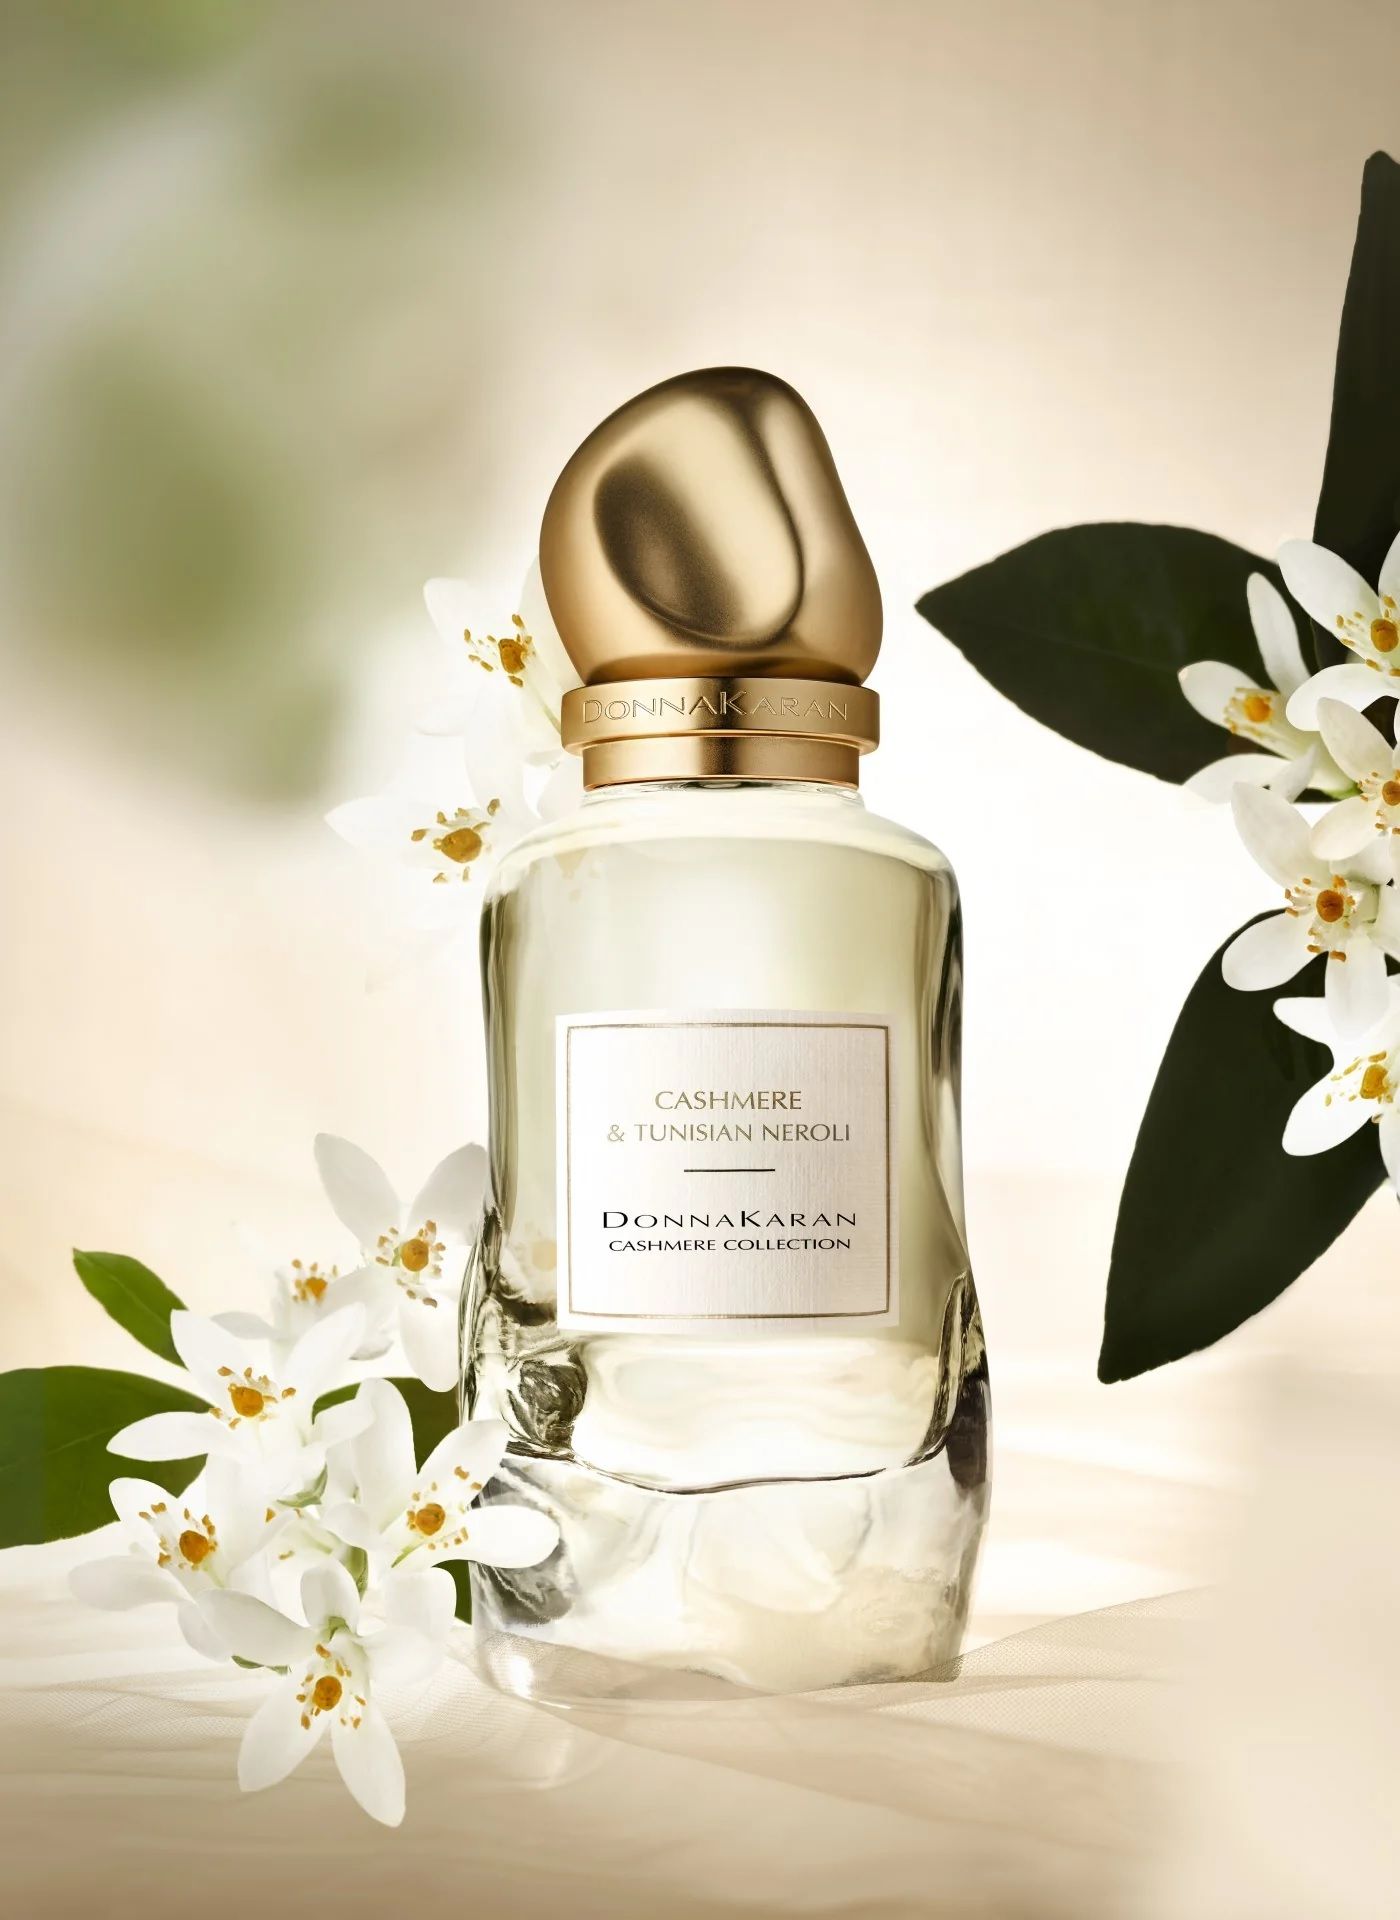 Cashmere & Tunisian Neroli Donna Karan perfume - a new fragrance for ...